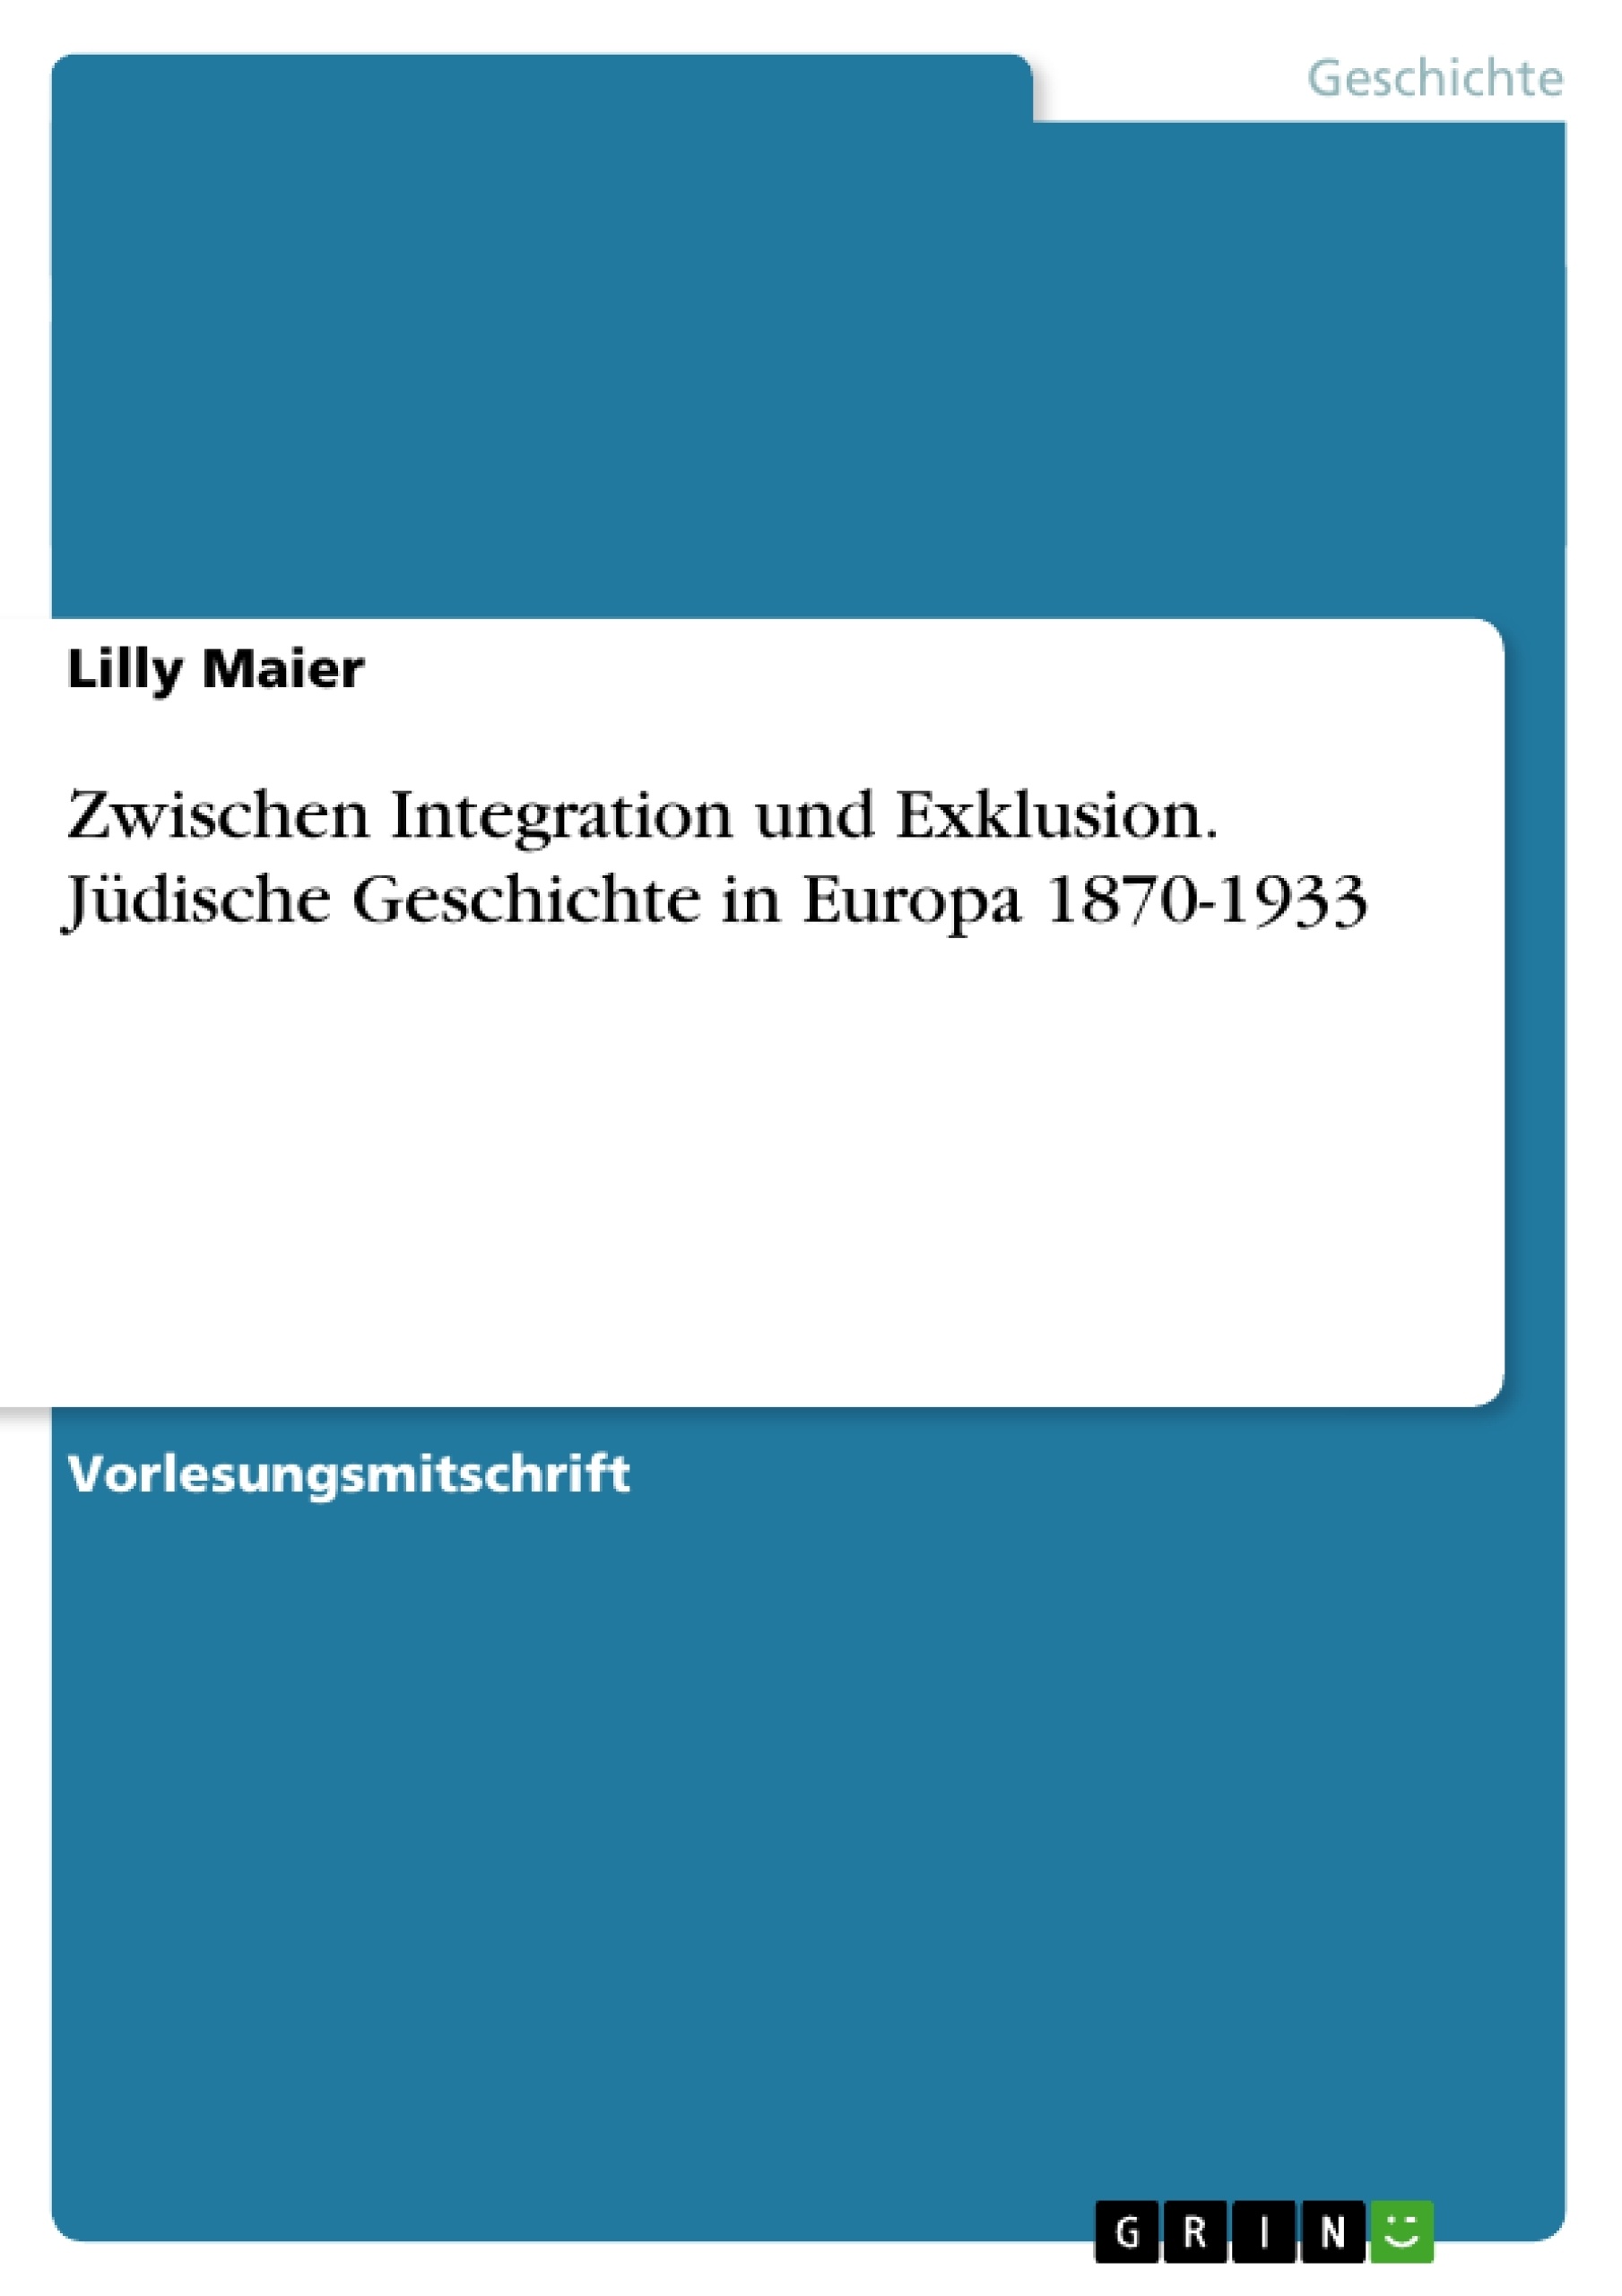 Titre: Zwischen Integration und Exklusion. Jüdische Geschichte in Europa 1870-1933